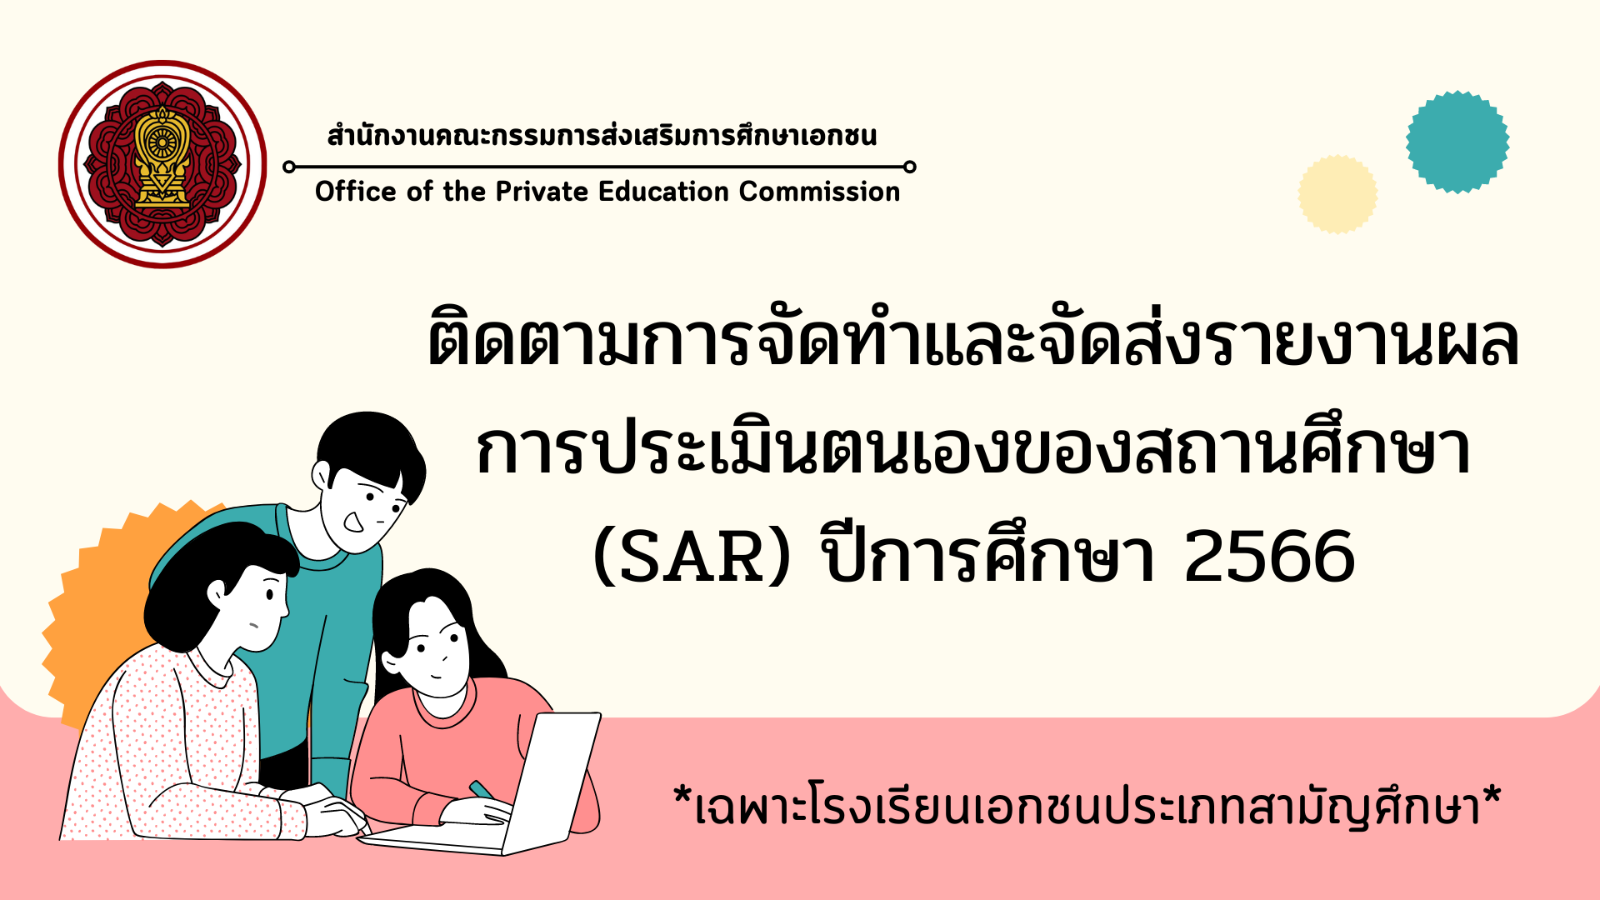 ติดตามการจัดทำและจัดส่งรายงานผลการประเมินตนเองของสถานศึกษา (SAR) ปีการศึกษา 2566 ผ่านระบบสารสนเทศด้านการประกันคุณภาพการศึกษา (E-SAR)